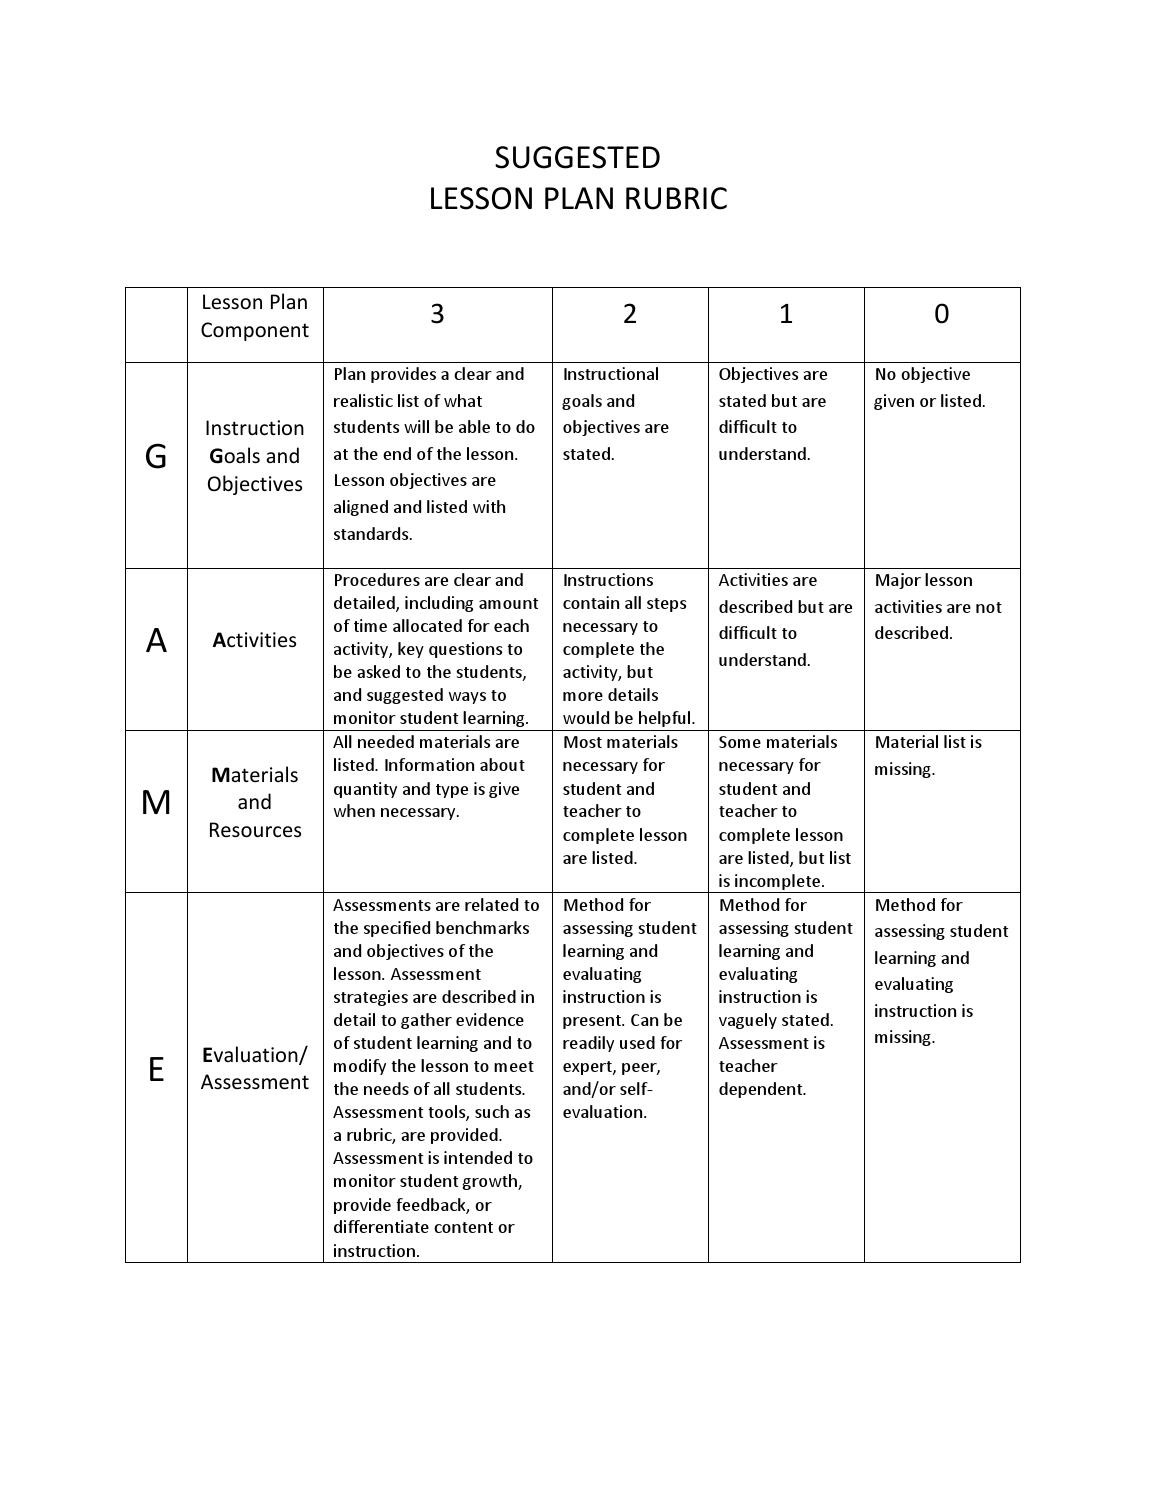 Lesson Plan Rubric 22 Lesson Plan Rubric by Caleb Ivanitsky issuu